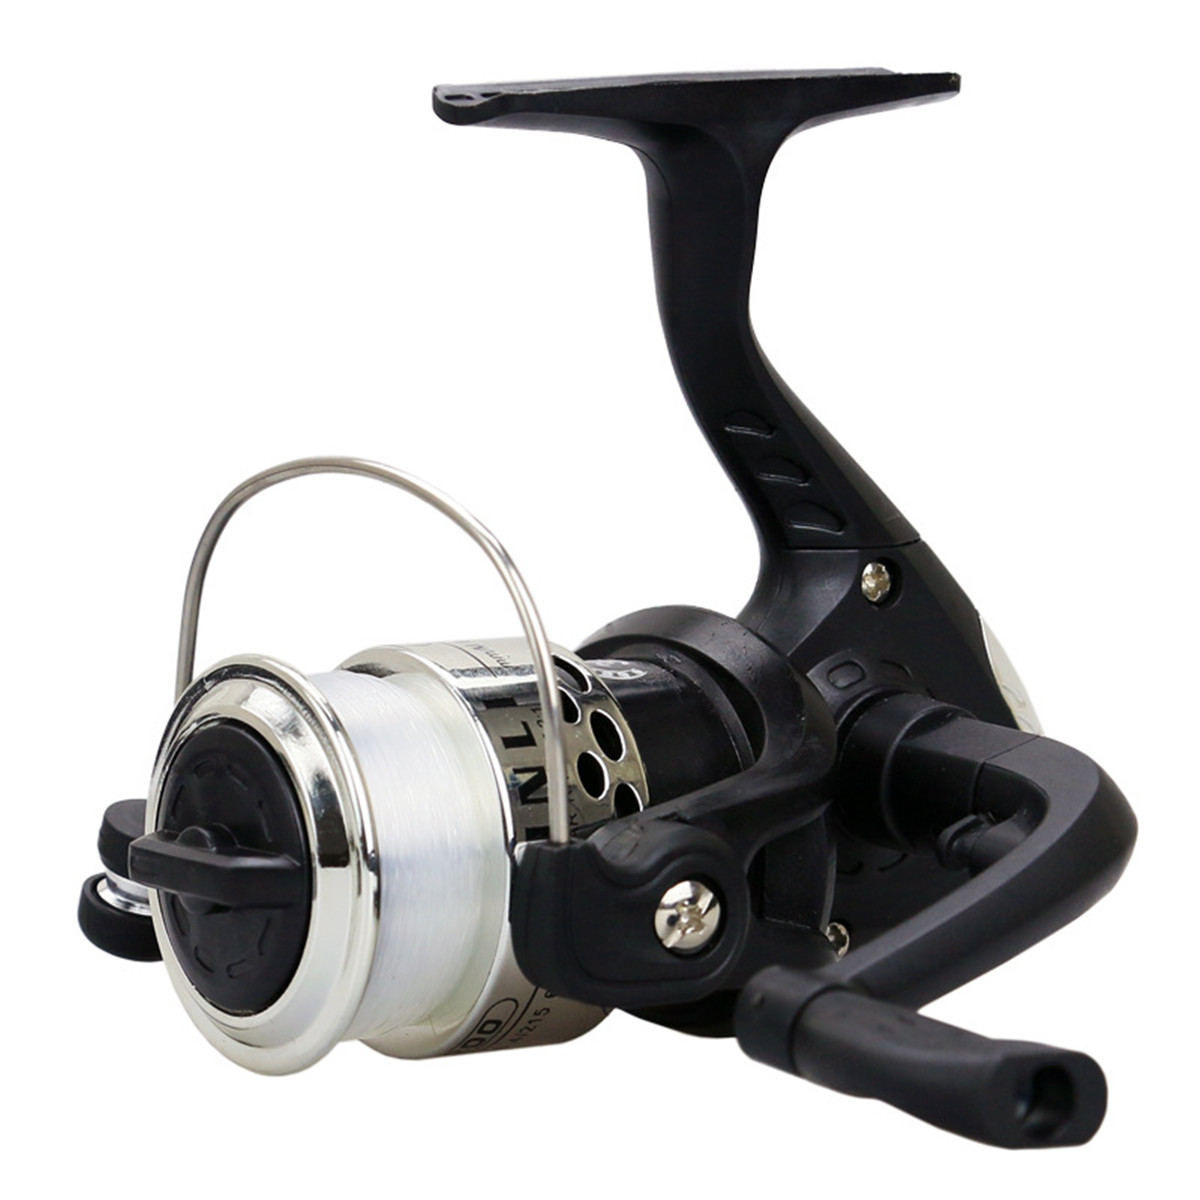 ZANLURE-521-3BB-Spinning-Fishing-Wheel-LR-Handle-Saltwater-Freshwater-Fishing-Reel-1335683